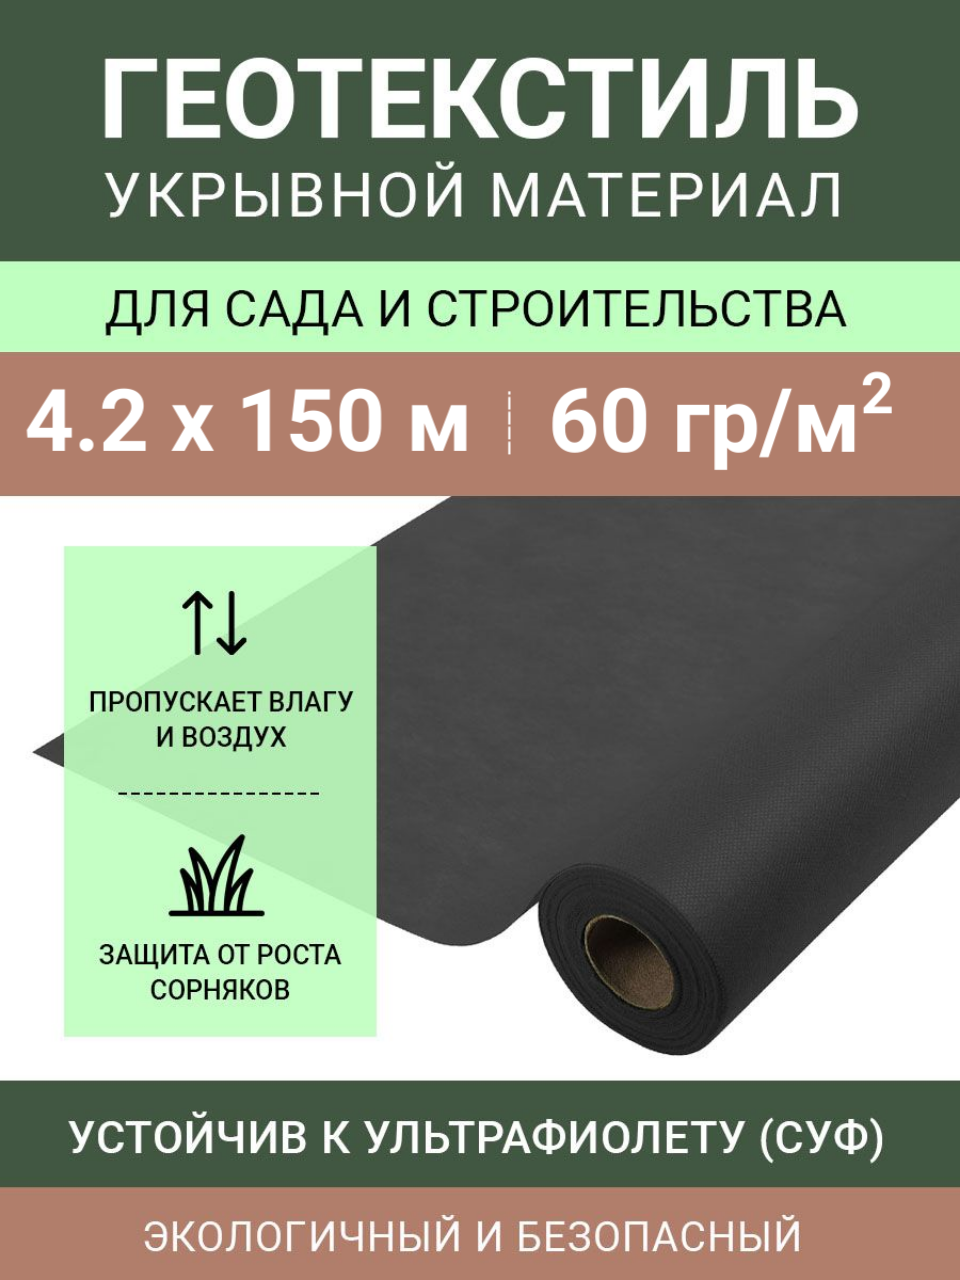 Черный укрывной нетканый материал Спанбонд СУФ 60 г/м2 в рулоне 4.2х150 м (сложен пополам)